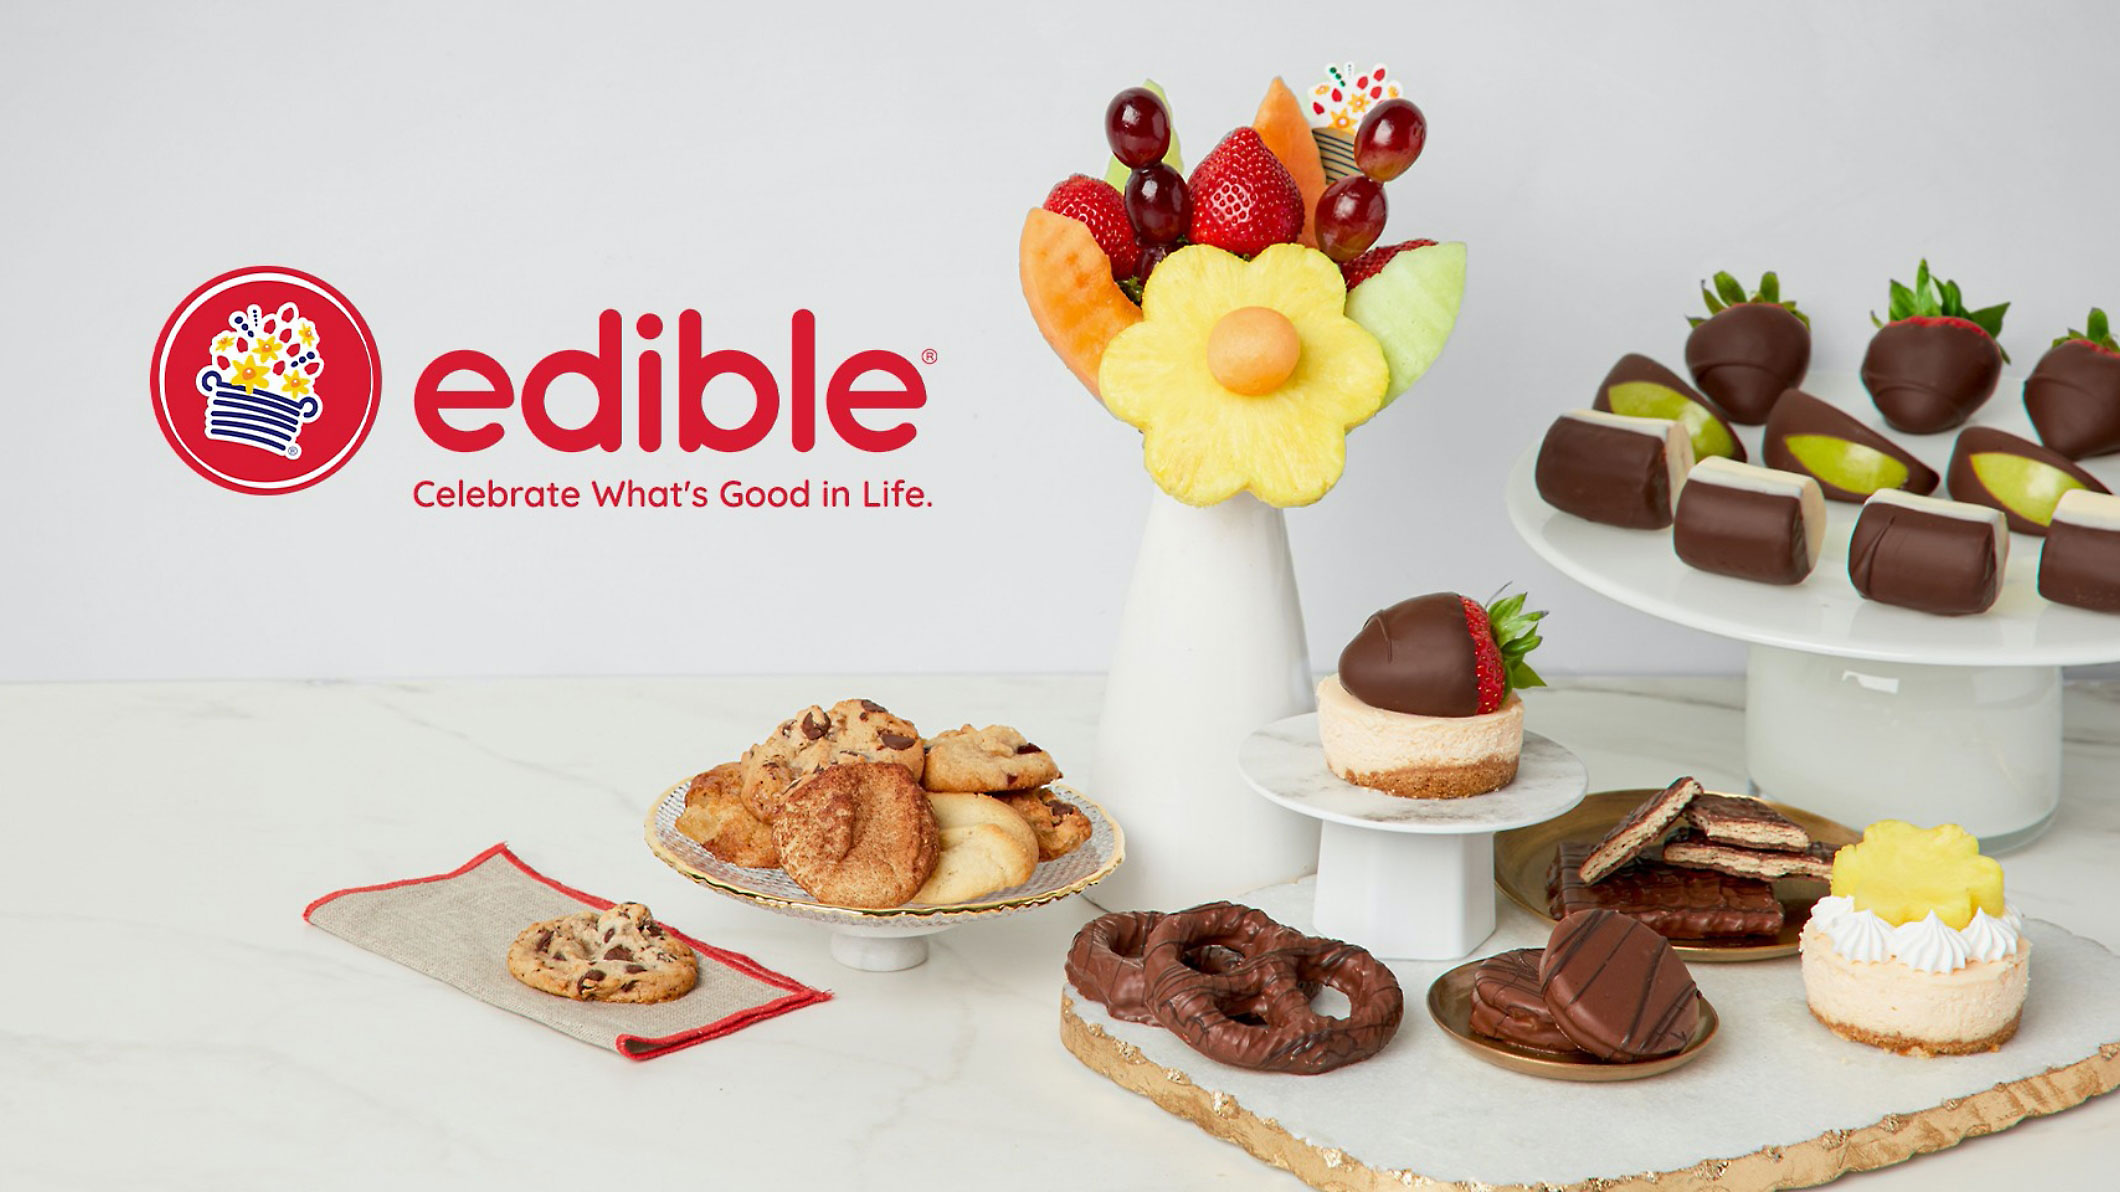 Edible という言葉が表示されたデザートとクッキーで一杯のテーブル。